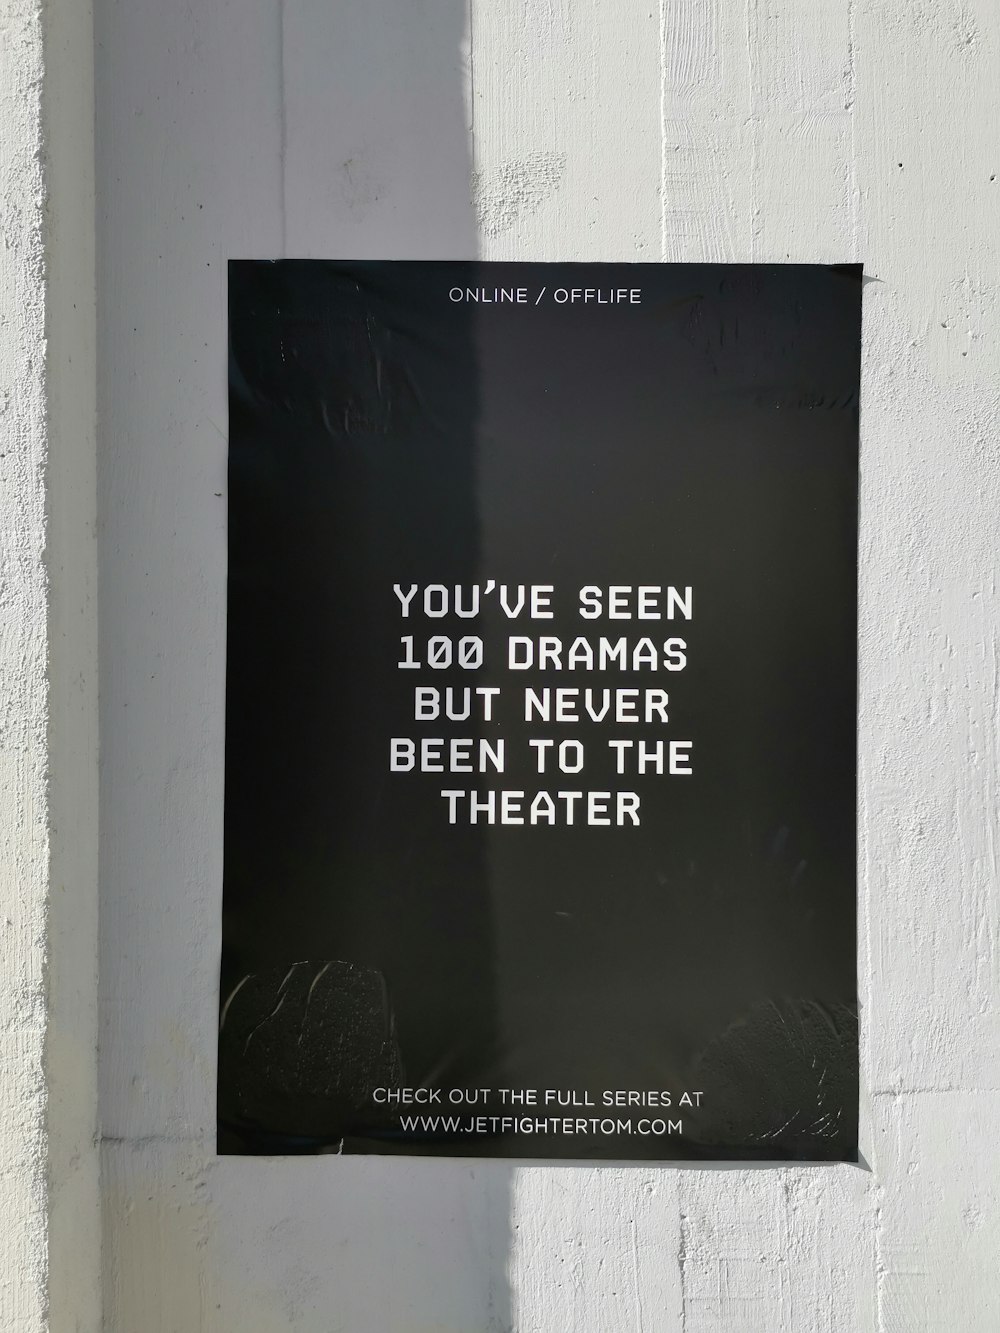 Has visto 100 dramas pero nunca has visto el cartel del teatro